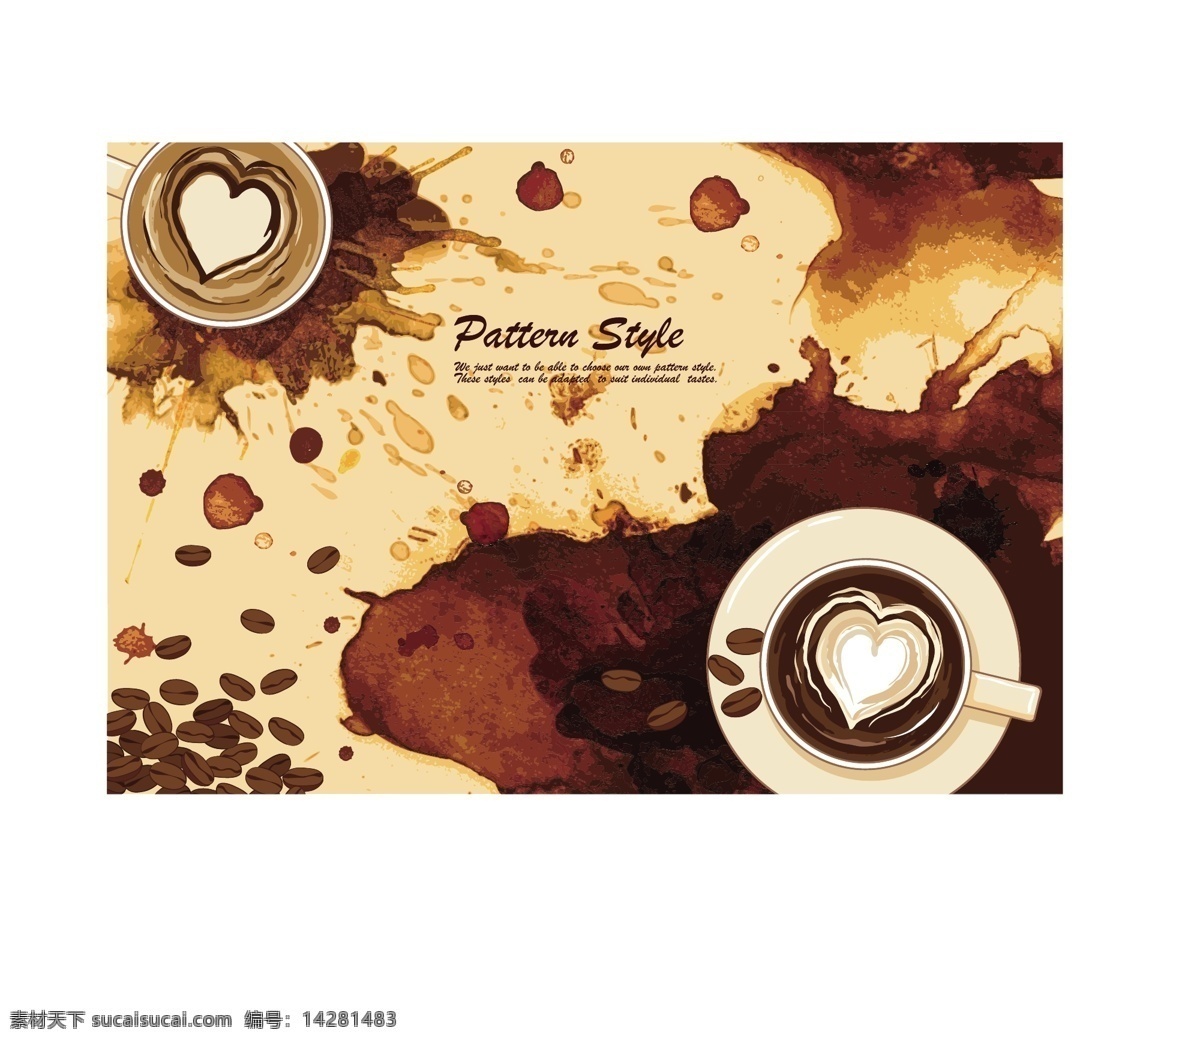 咖啡渍 污迹 矢量 咖啡 咖啡豆 喷溅 水彩 心形 卡普基诺 污渍 矢量图